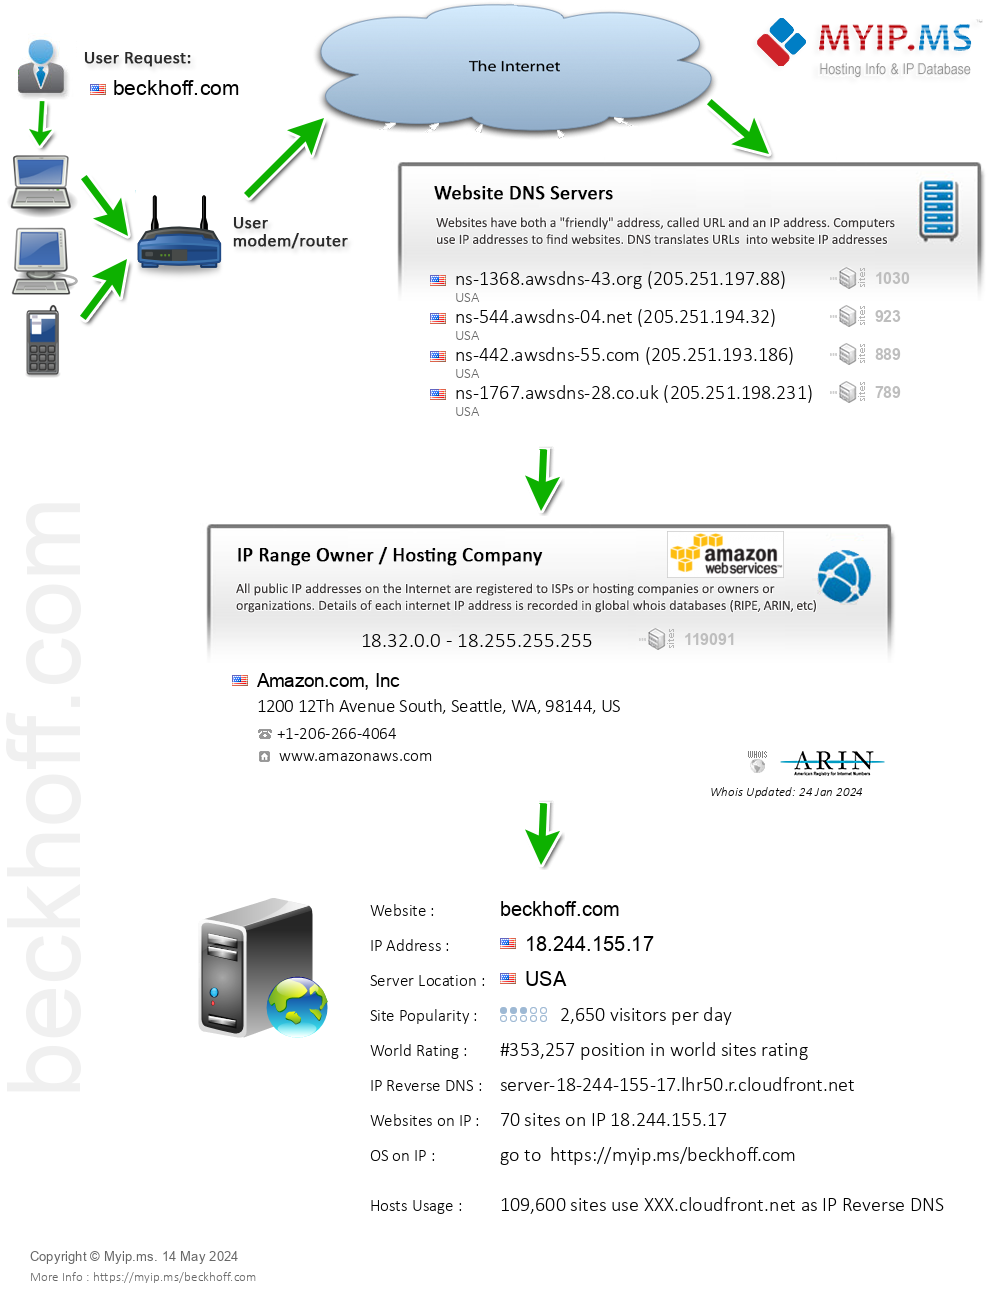 Beckhoff.com - Website Hosting Visual IP Diagram